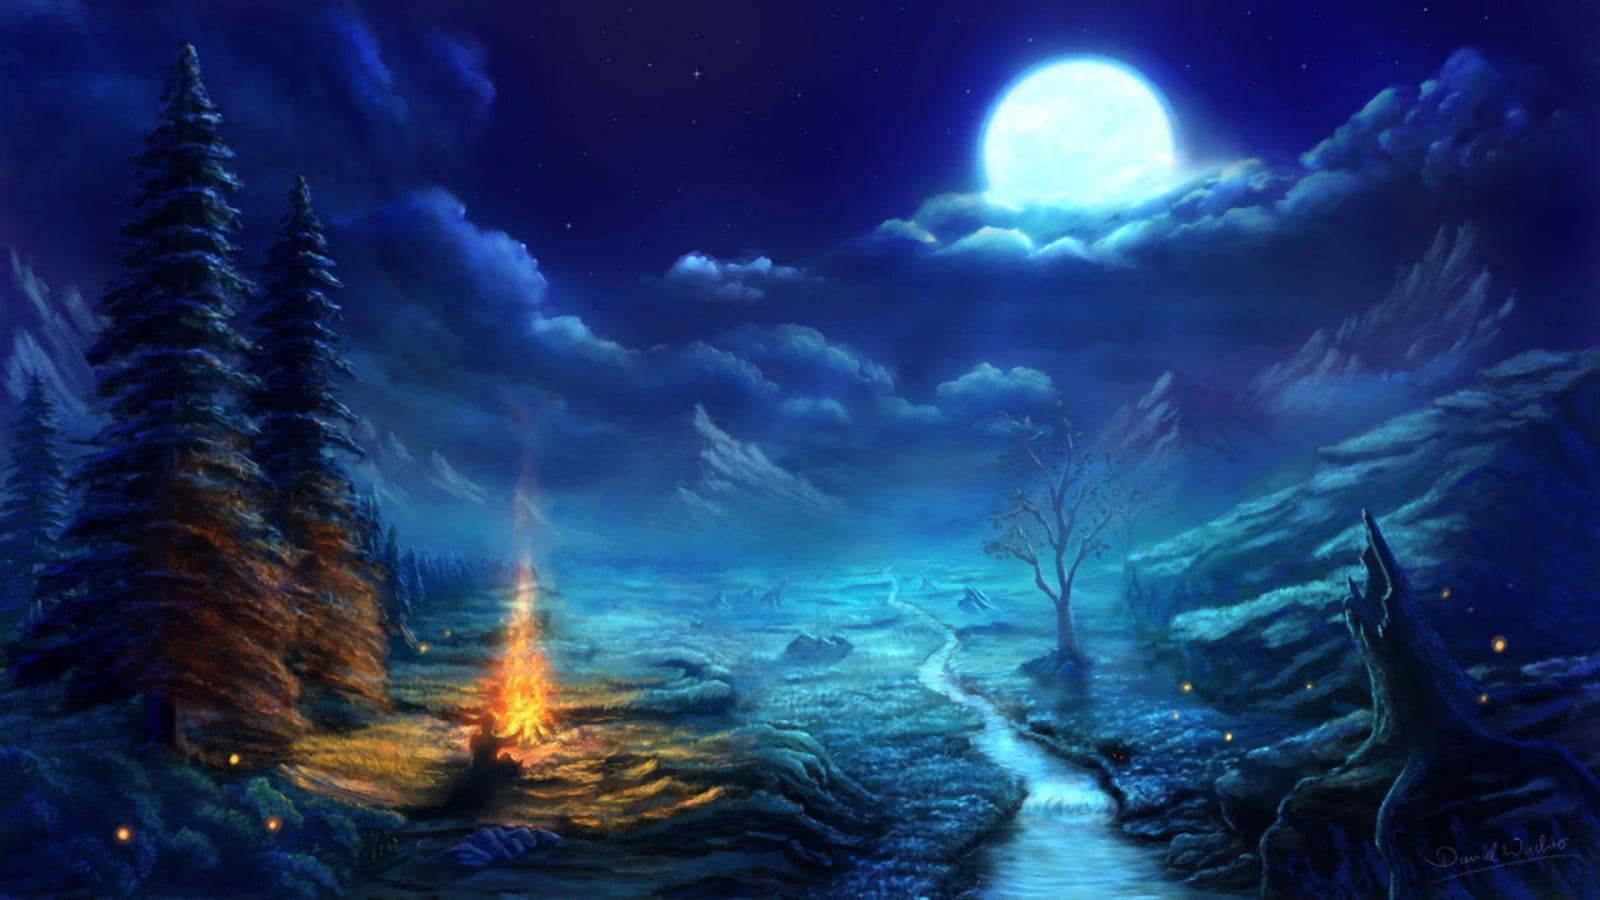 Illustration of trees under moonlight, digital art, fantasy art